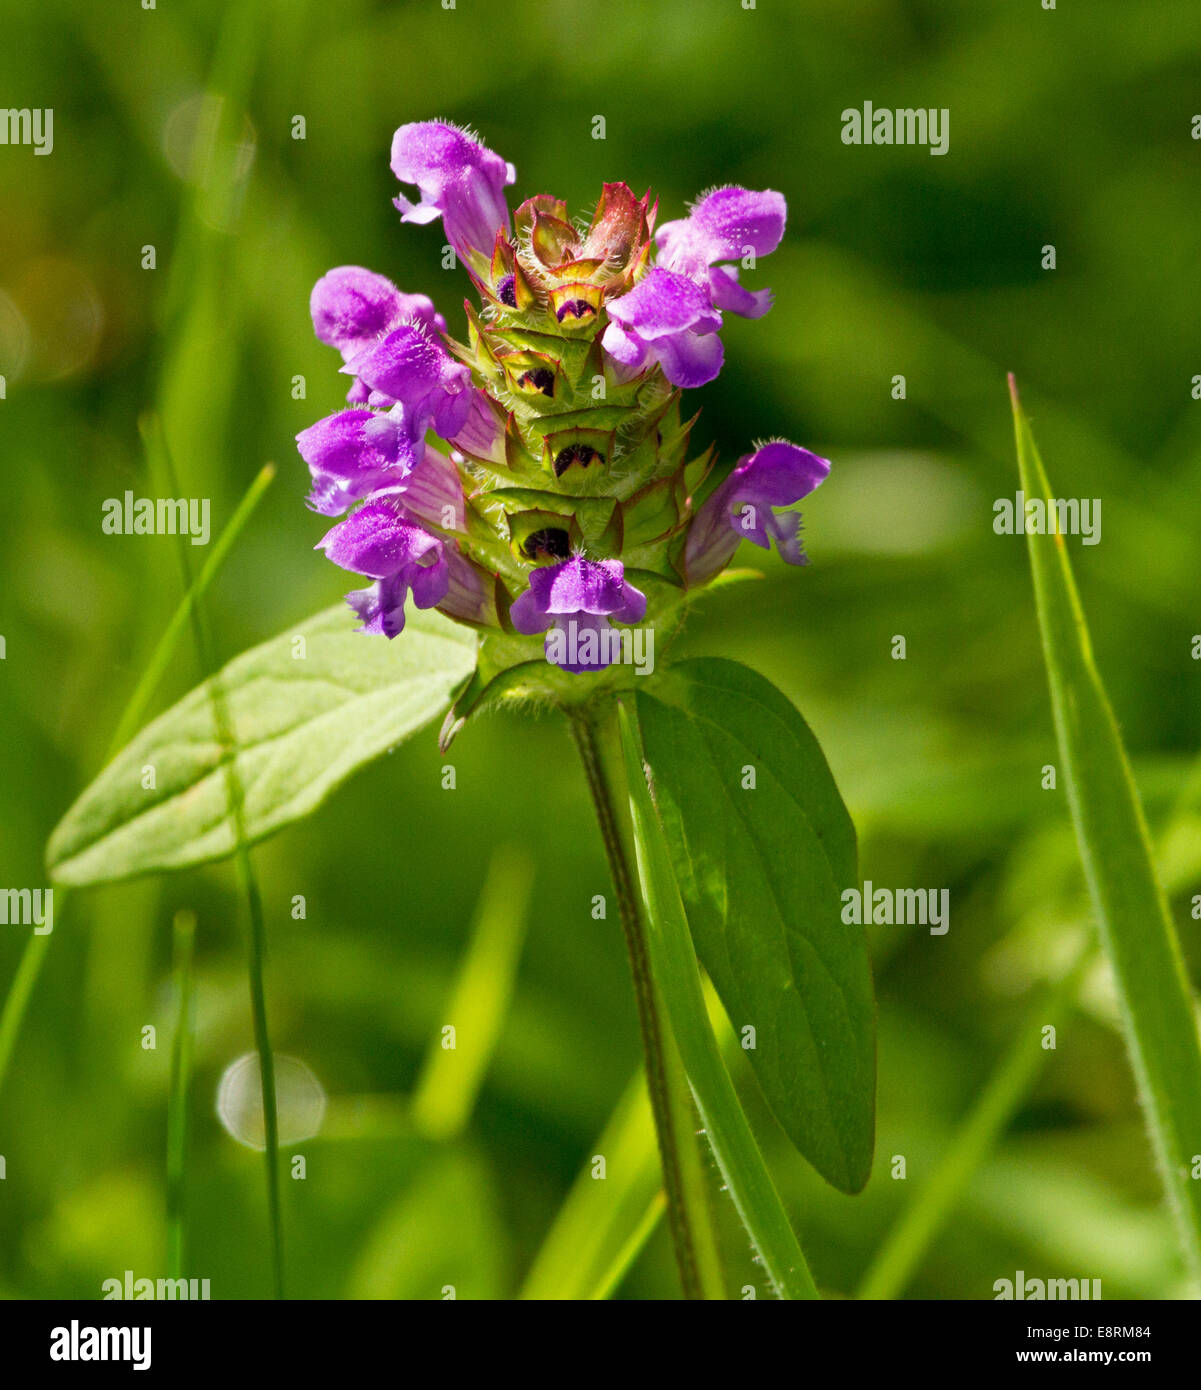 En fleurs sauvages, fleurs violettes et vertes feuilles de s'auto-guérir, Prunella vulgaris, contre un arrière-plan vert Banque D'Images